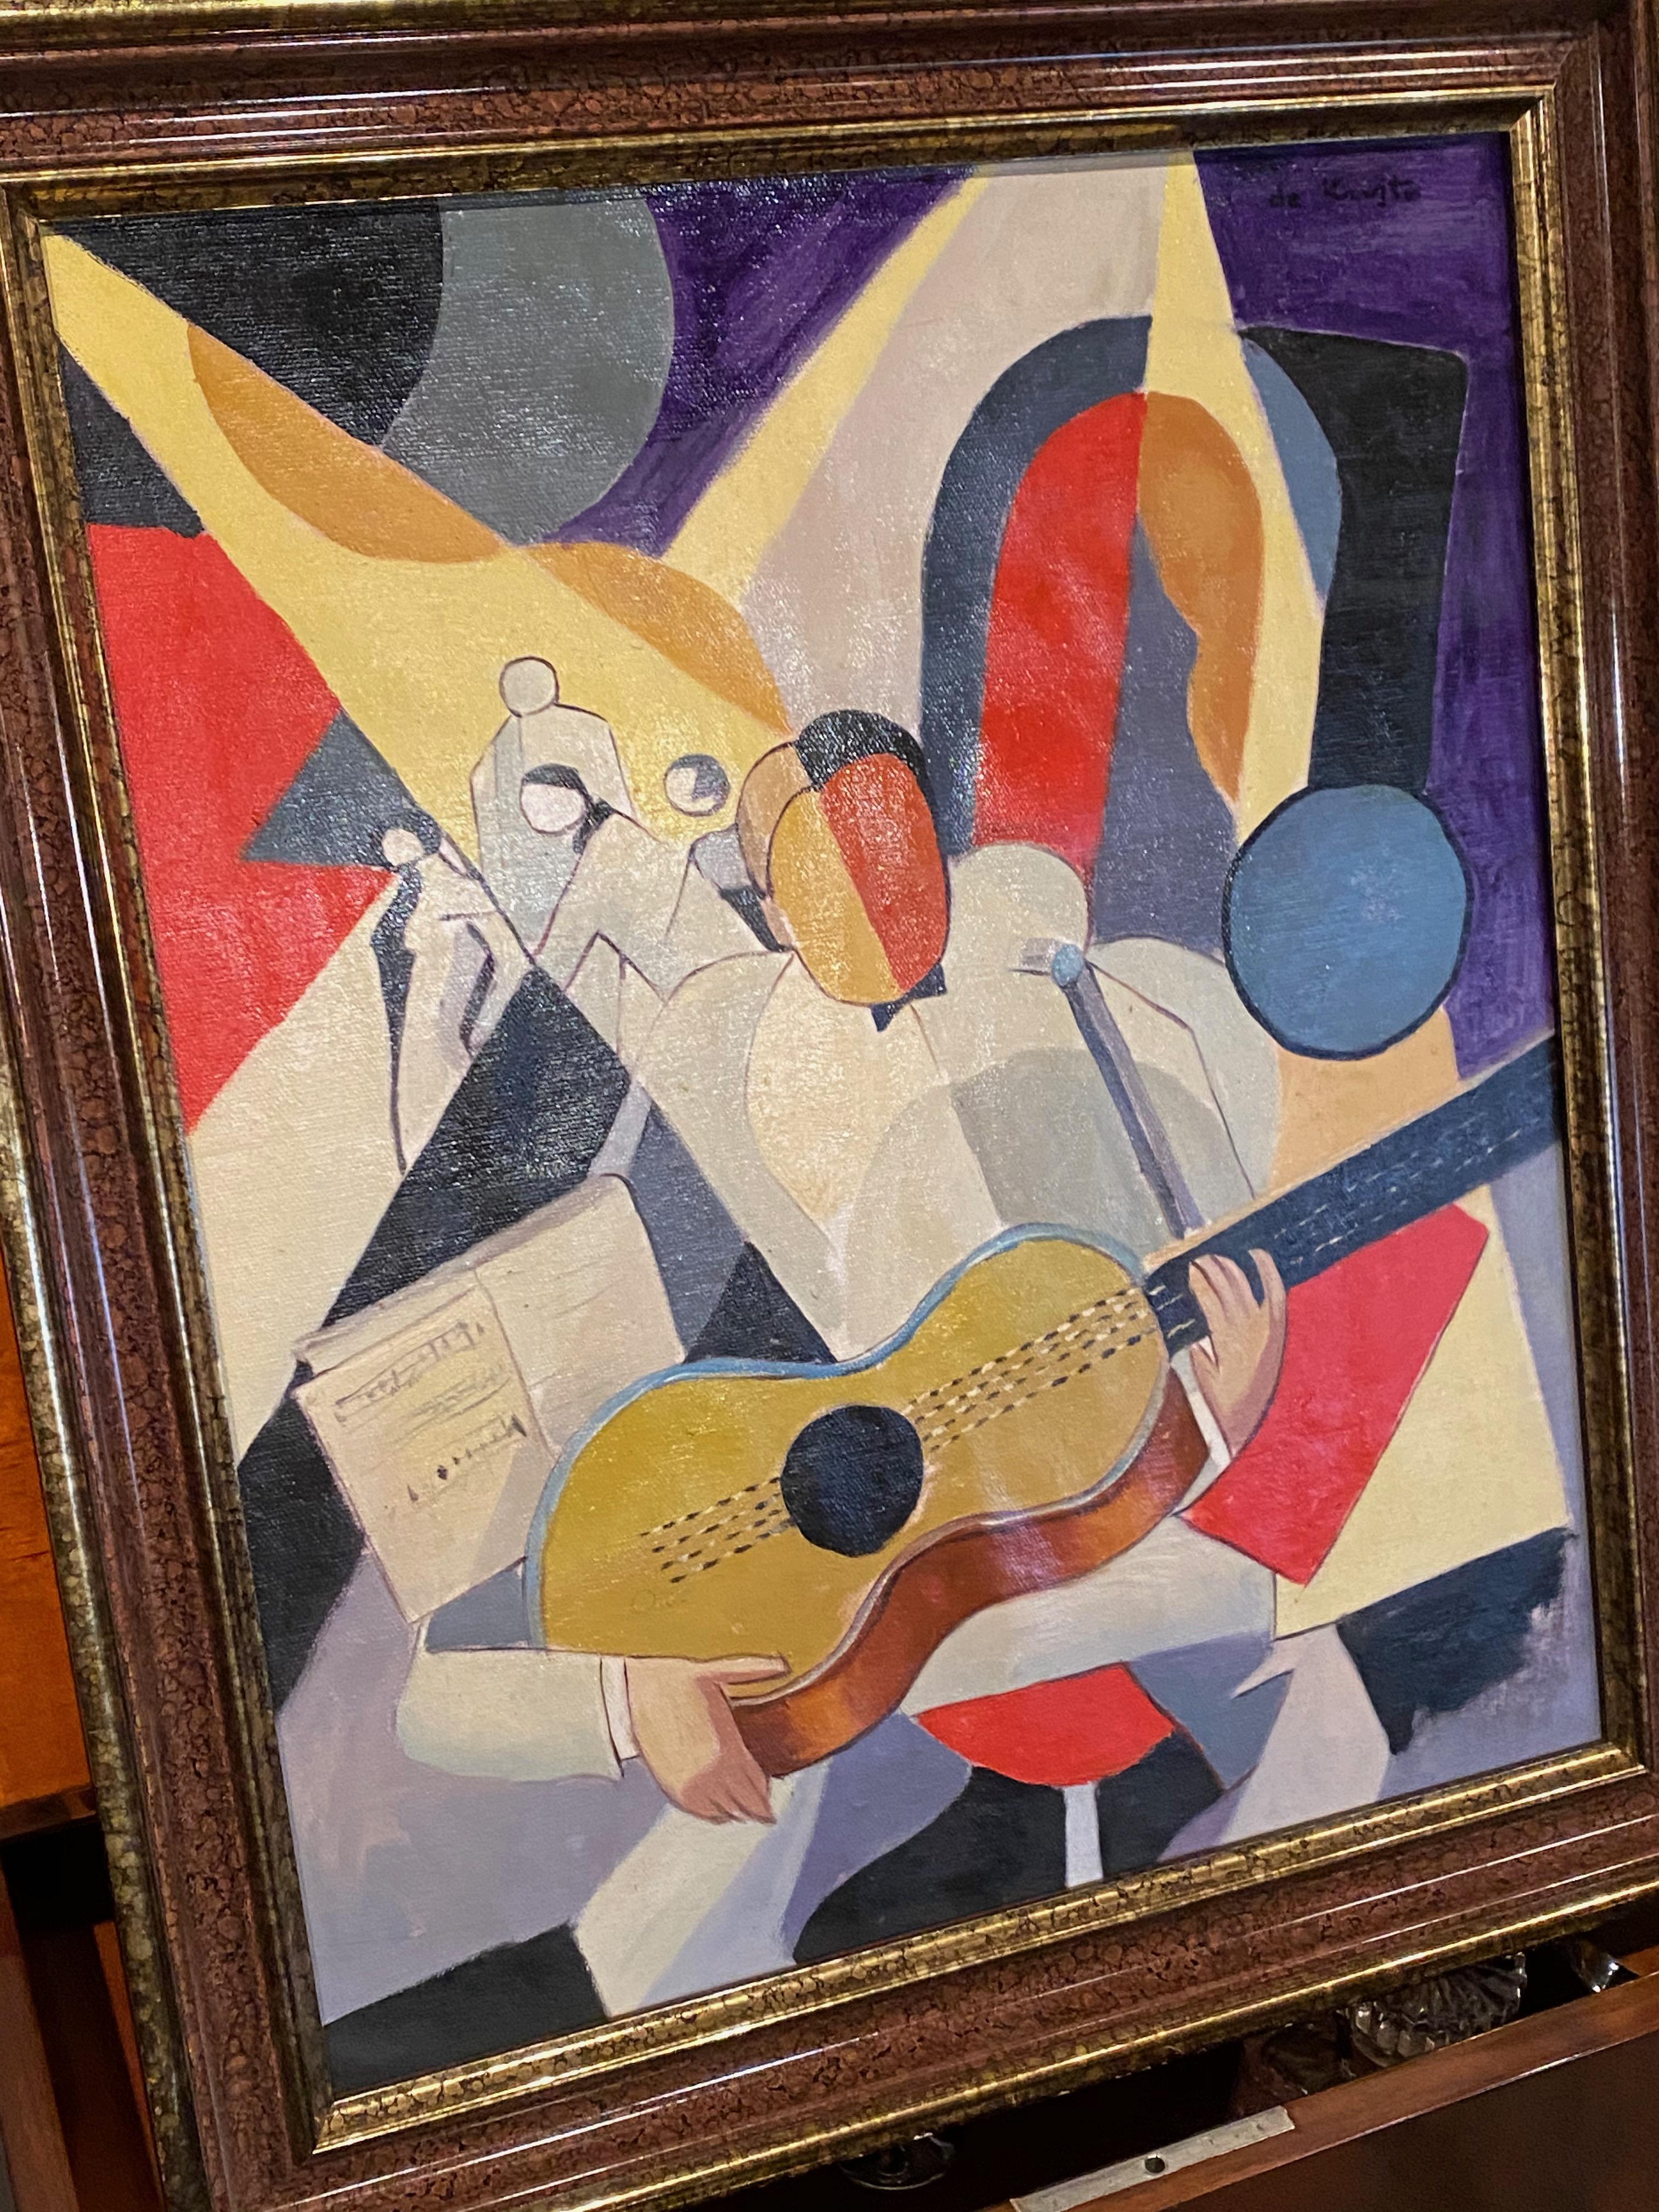 Kubistisches Art-Deco-Gemälde eines Gitarristen von Bela De Kristo. Starker kubistischer Stil und Farben, originell und der Zeit entsprechend. Das Bild, das einen Sologitarristen mit Tänzern im Hintergrund und Notenblättern darstellt, trägt zum